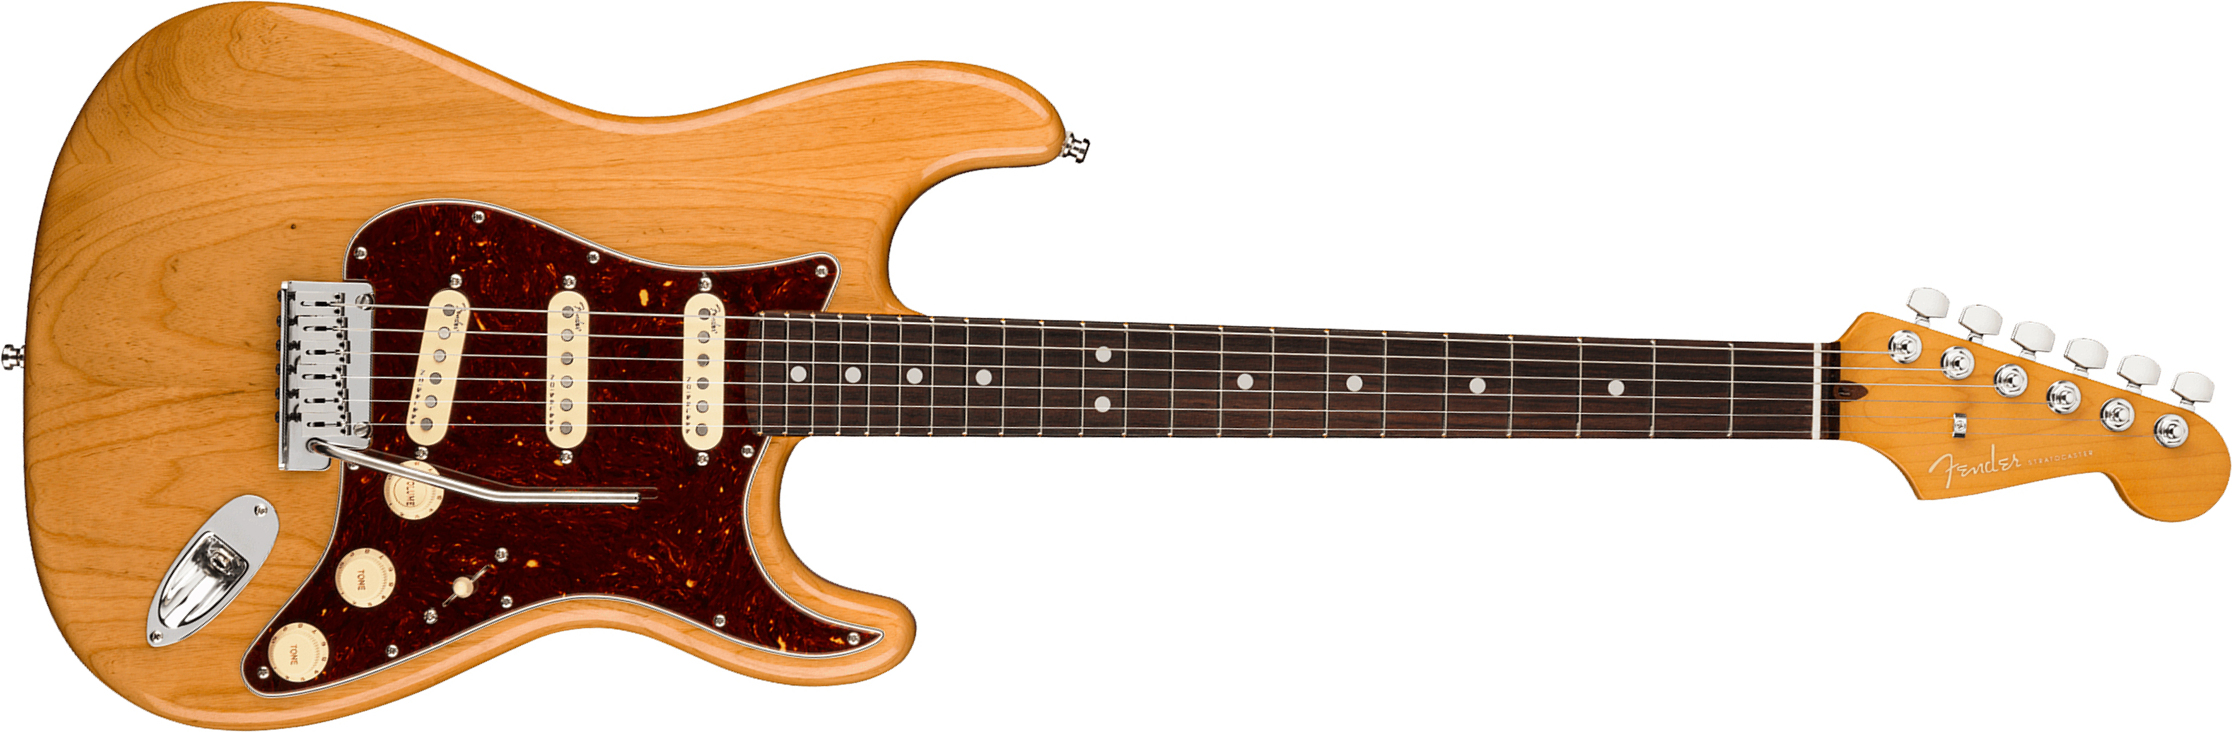 Fender Strat American Ultra 2019 Usa Rw - Aged Natural - Elektrische gitaar in Str-vorm - Main picture